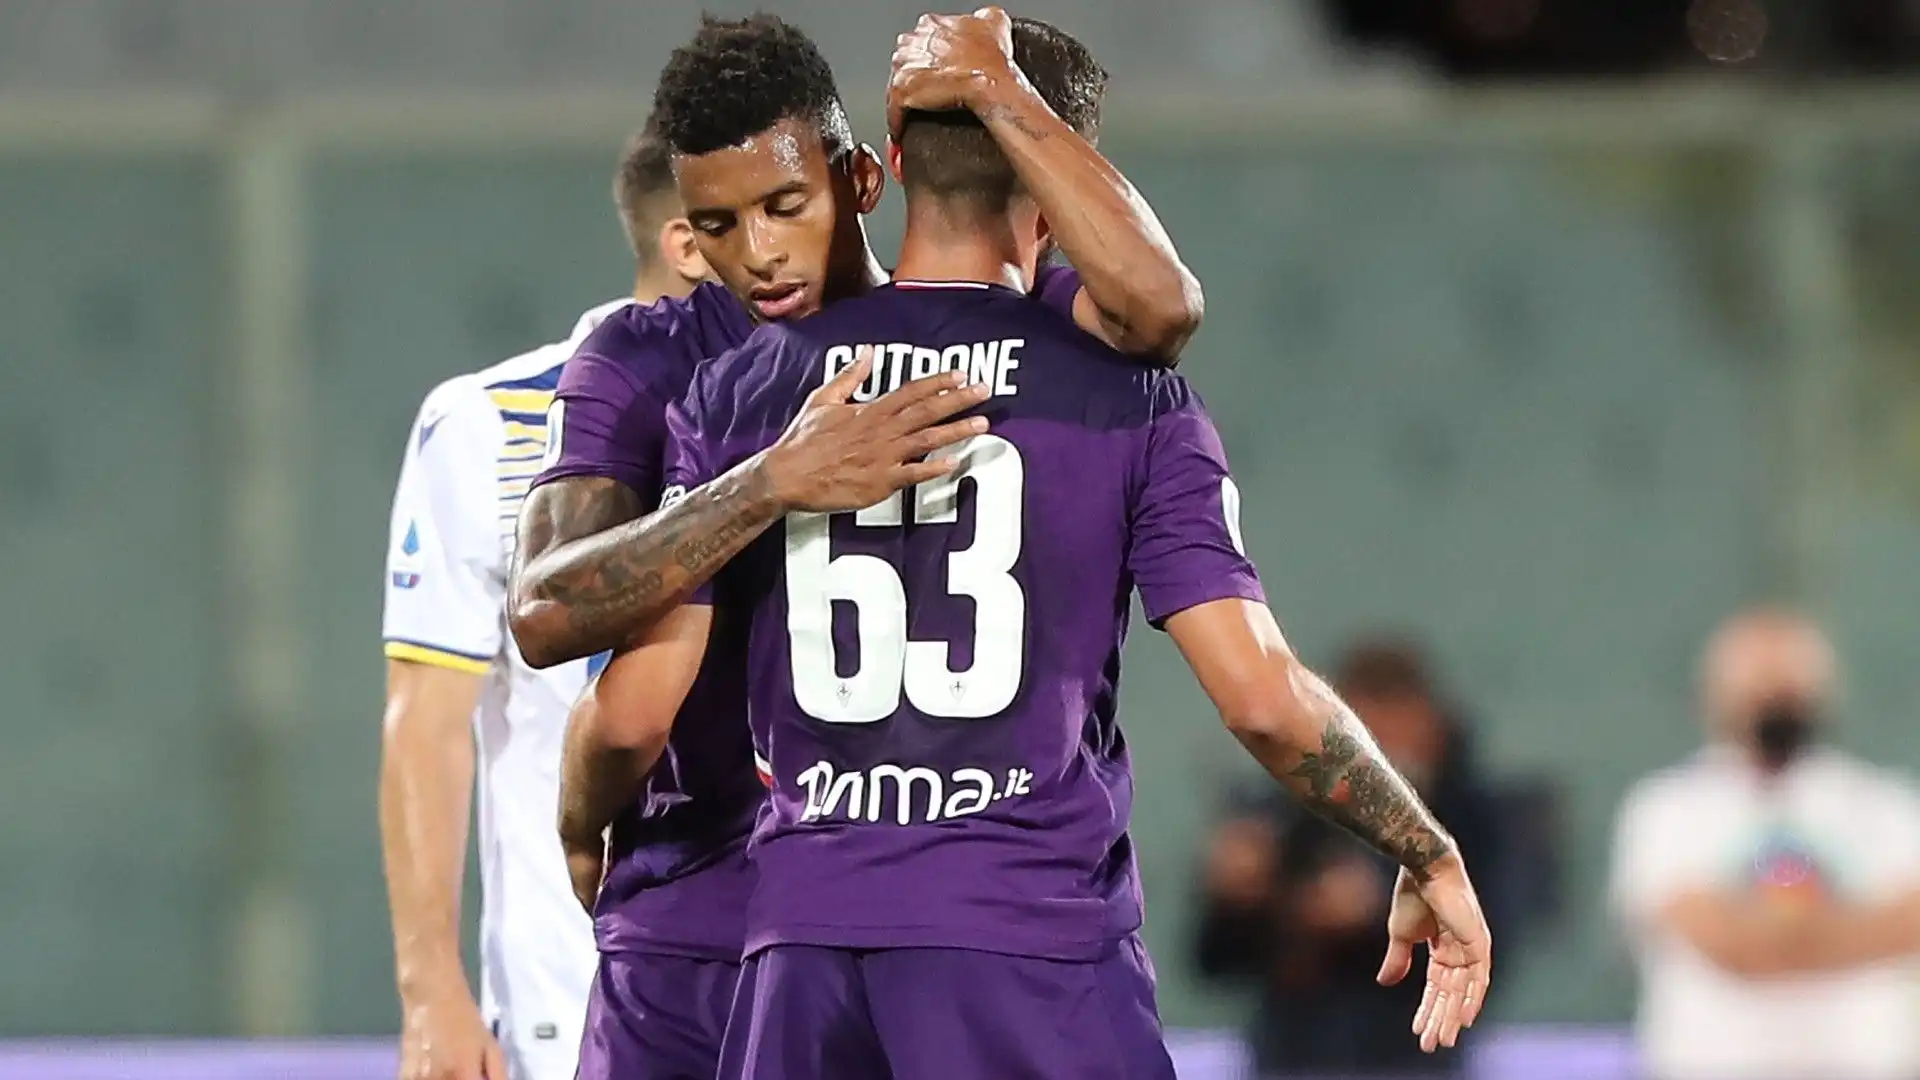 Dopo 28 gare e 3 gol in un anno, Cutrone ha fatto ritorno in Italia e si è accasato alla Fiorentina in prestito